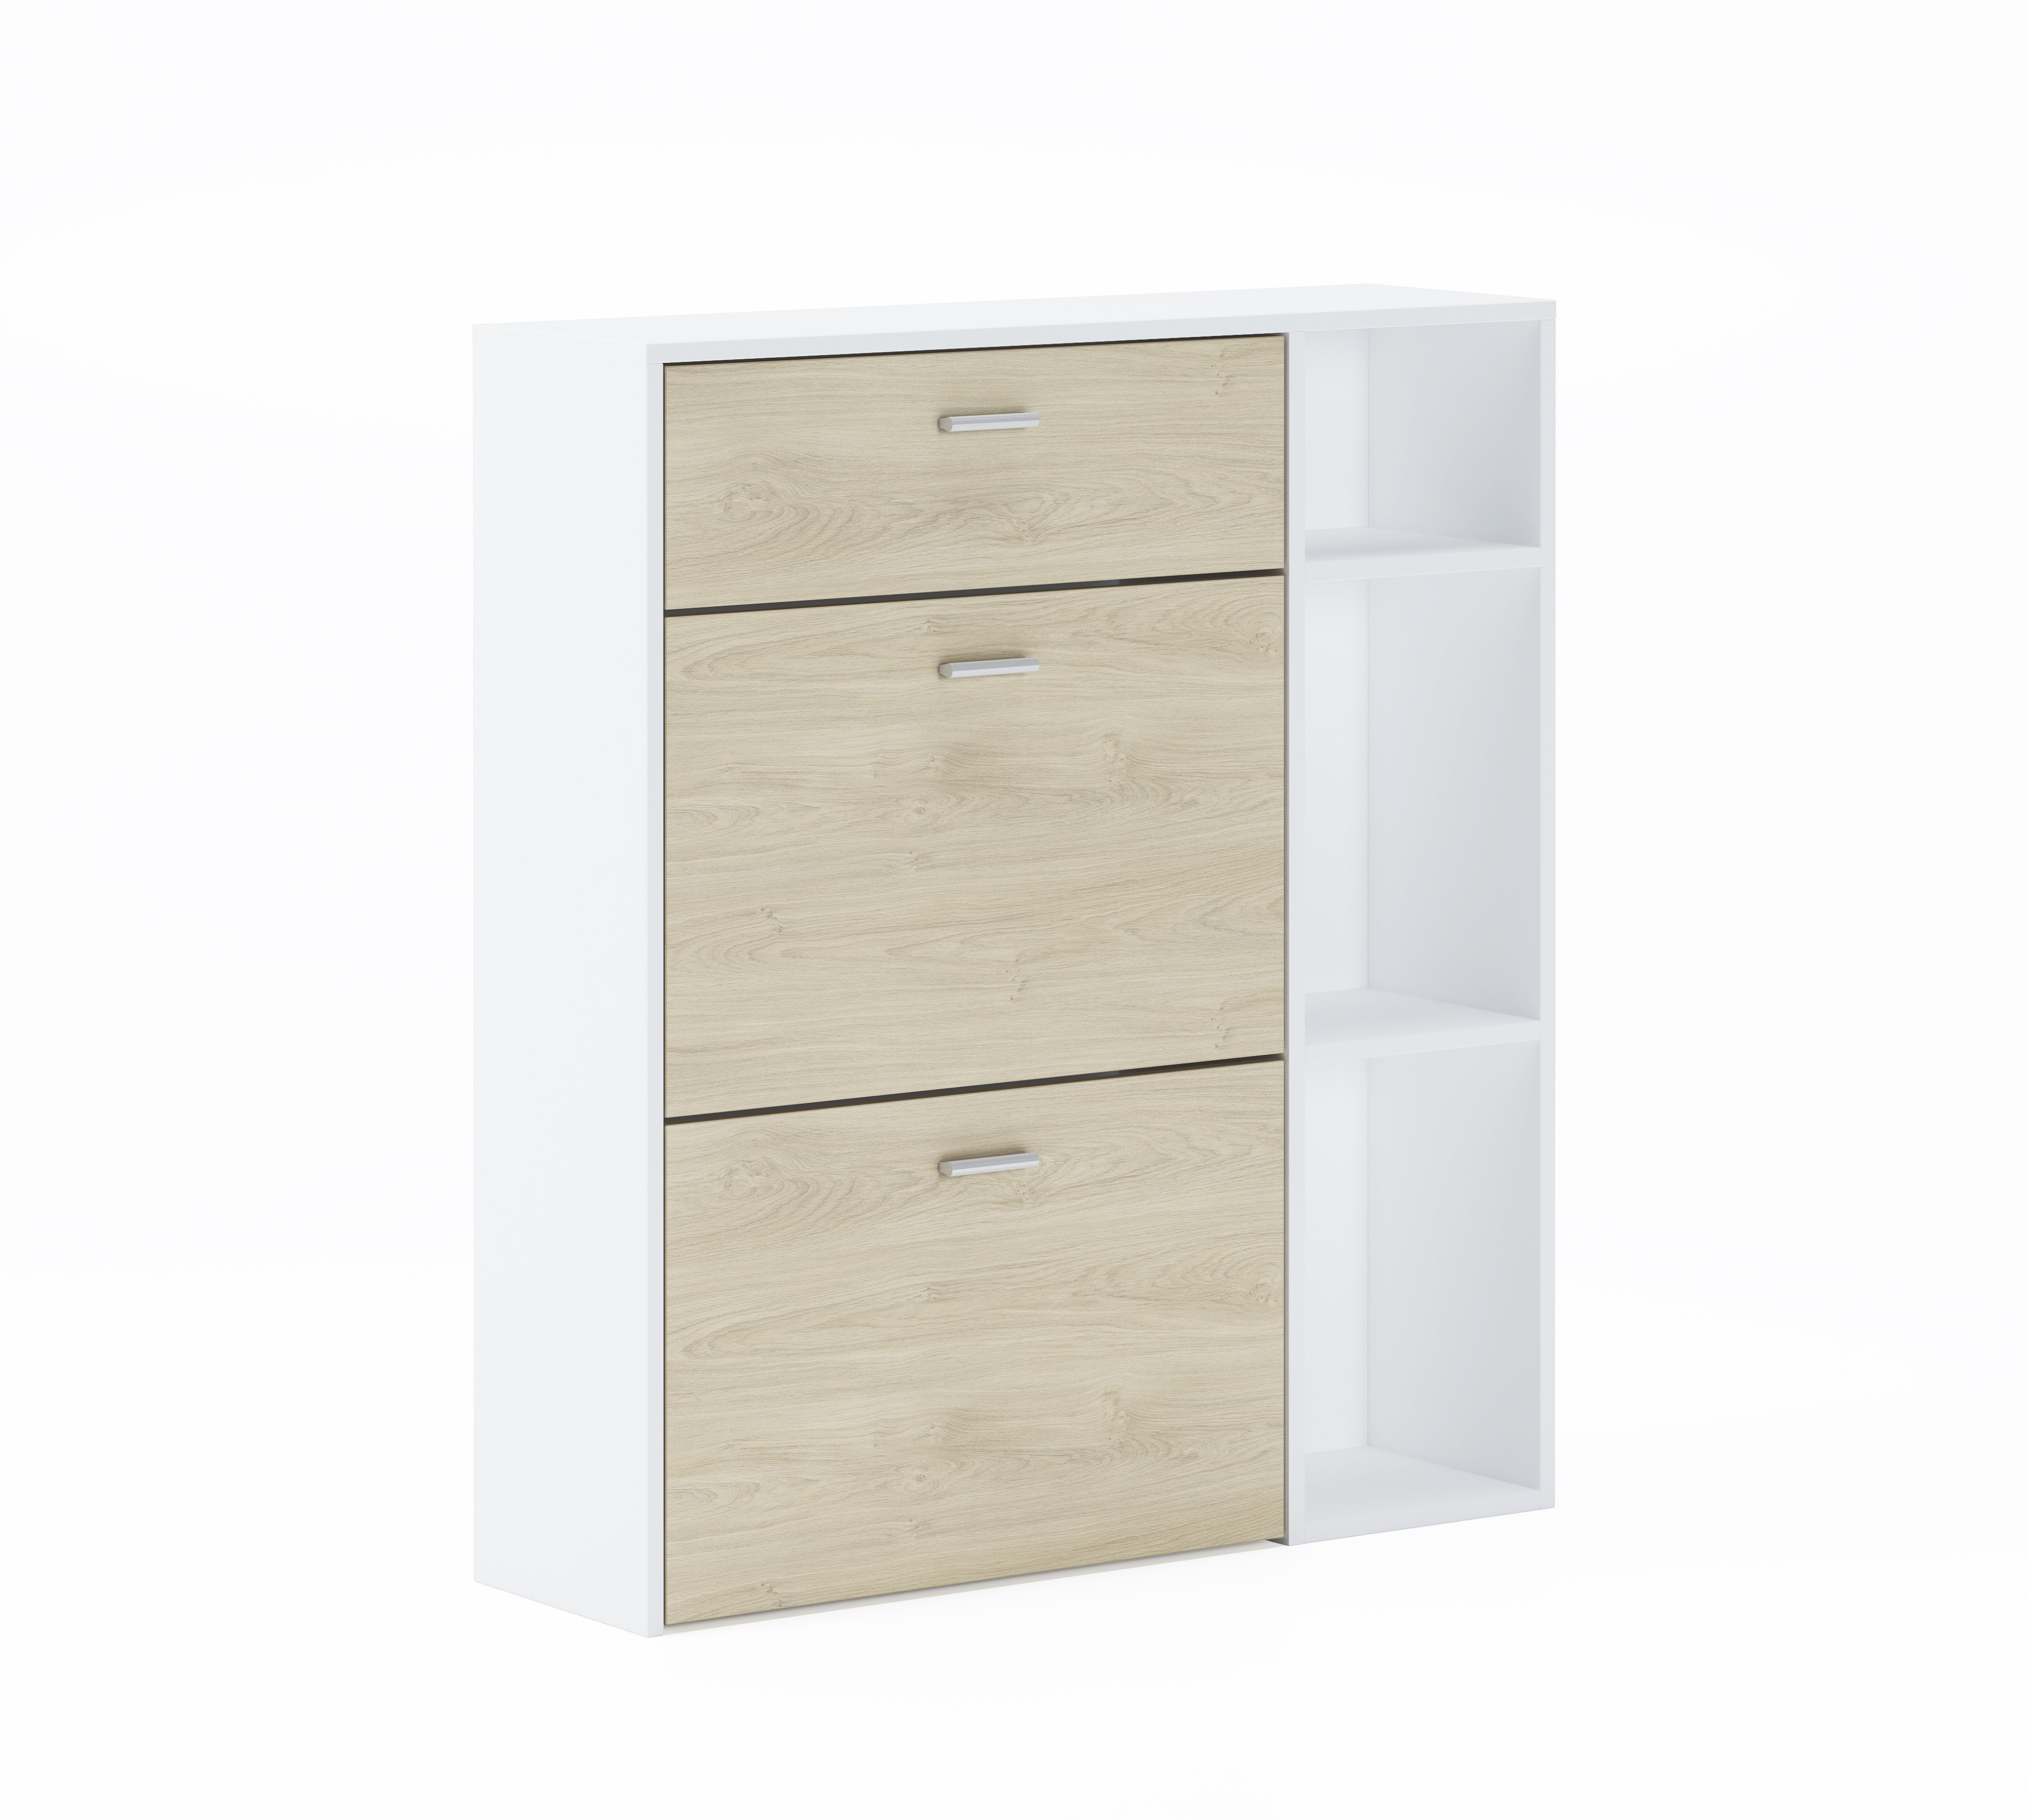 Home Innovation – Zapatero WIND, color estructura Blanco, color Puccini en  las 2 puertas basculantes y el cajón, medidas 90x26x101.5cm de altura.